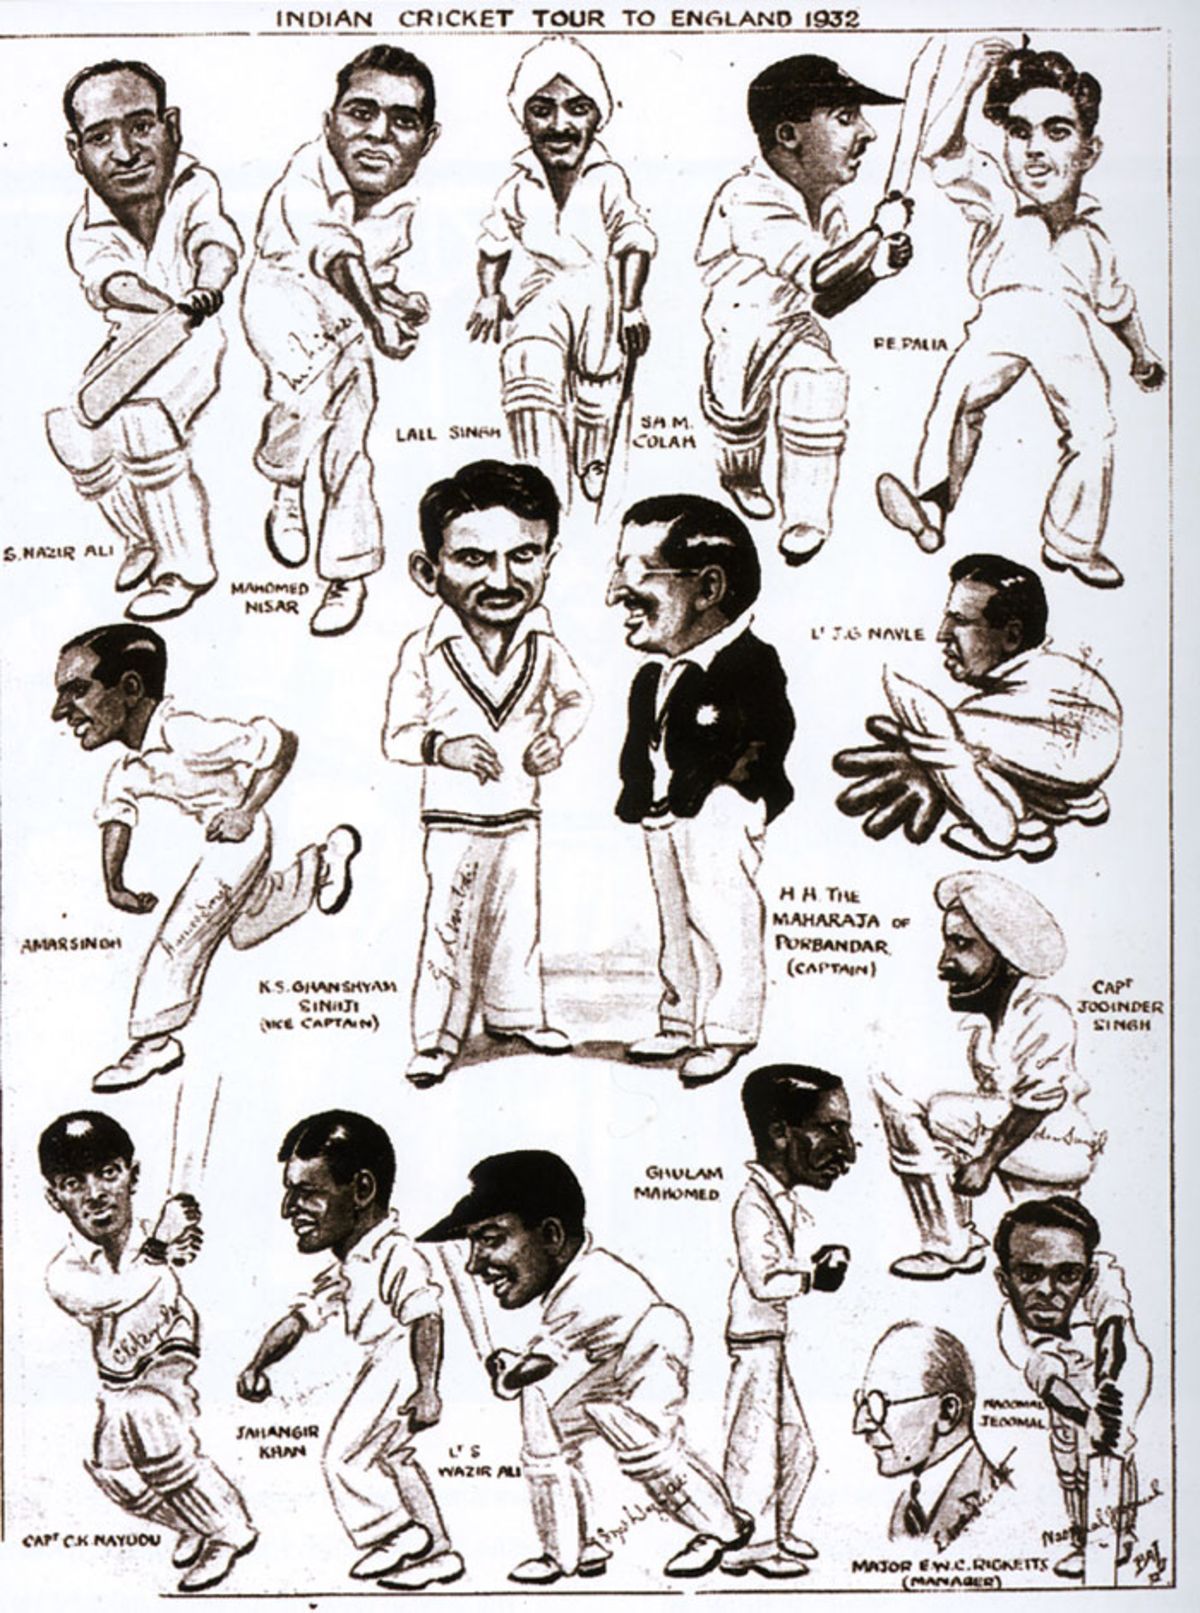 All India Cricket Team - Pen Portraits- England April 1932